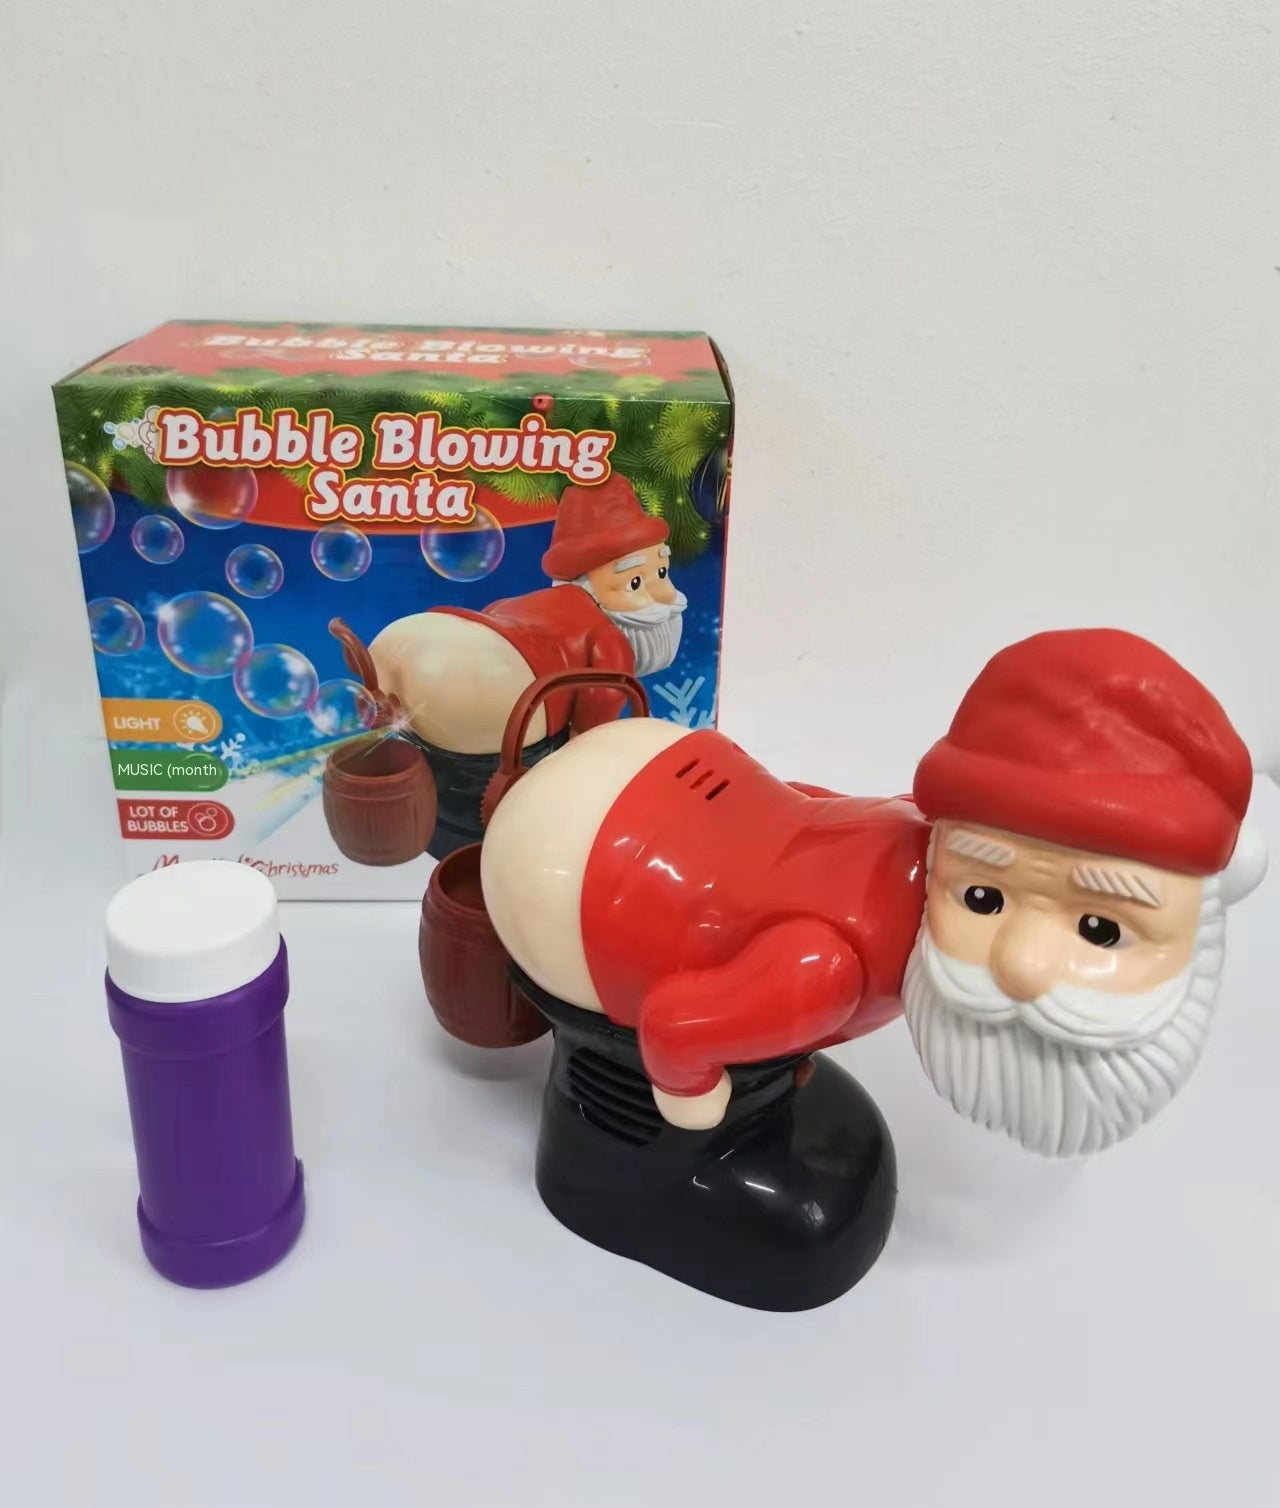  Santa Claus Bubbles Machine cashymart